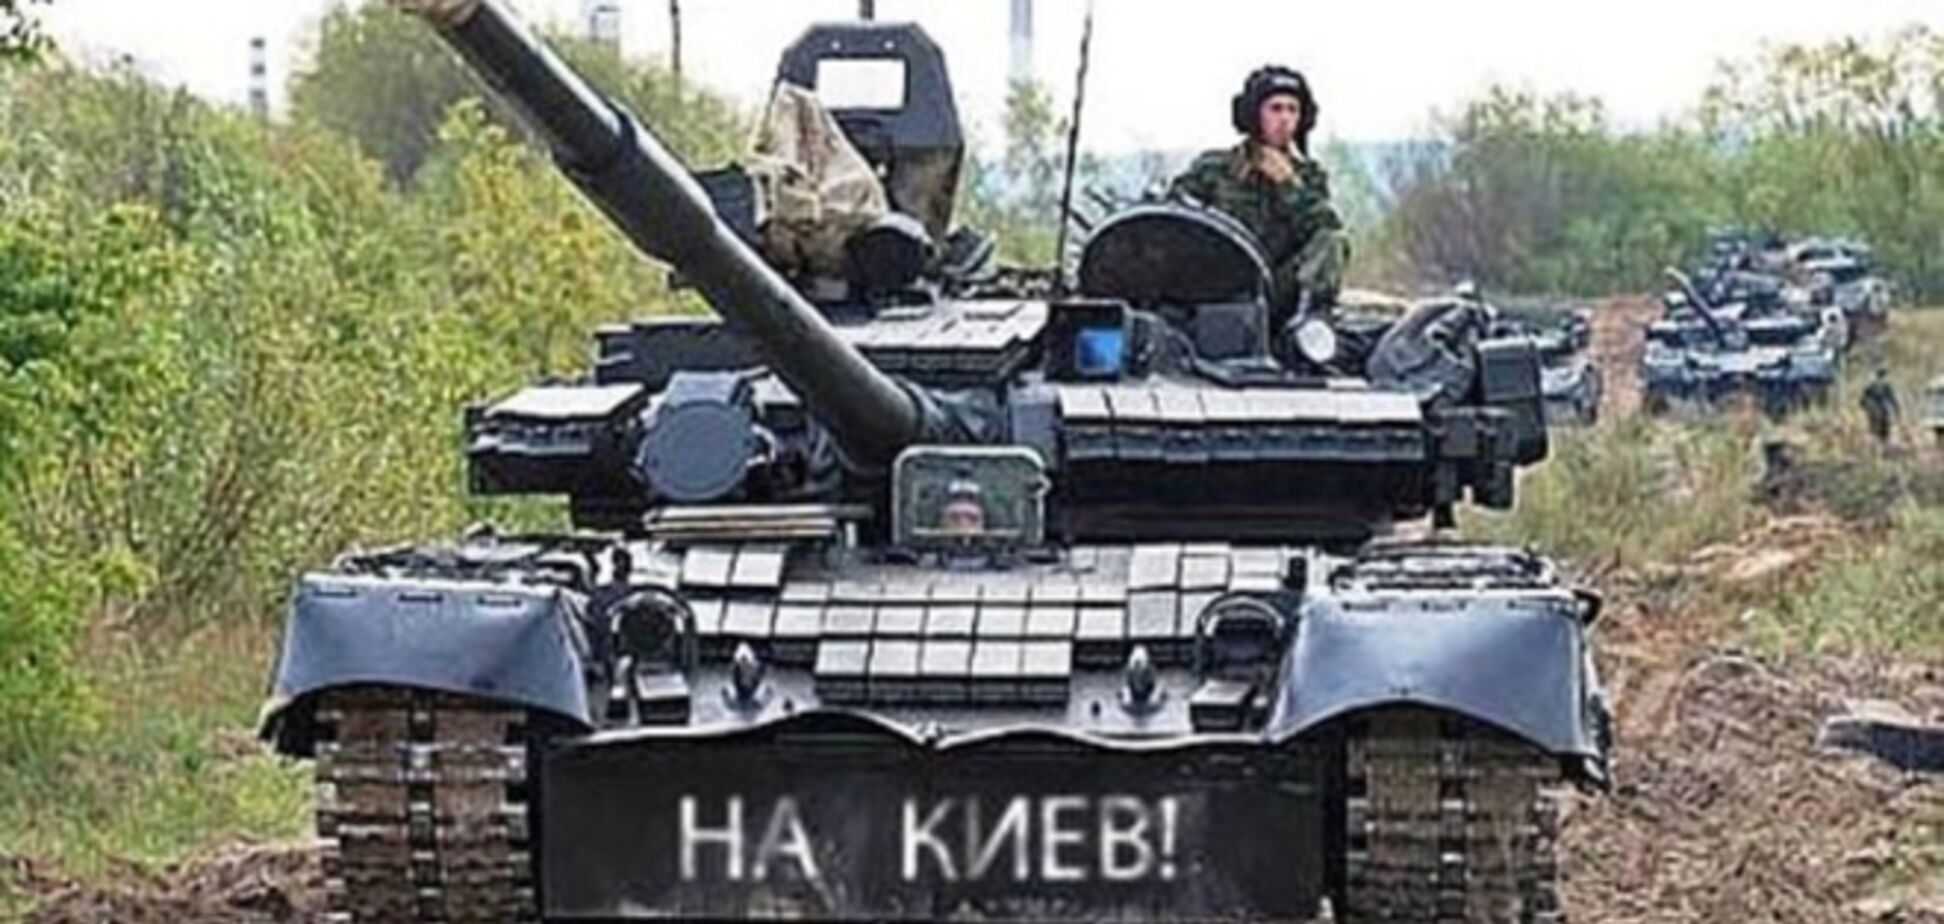 Не доехал: партизаны в Донецке уничтожили танк с надписью 'На Киев' - волонтер